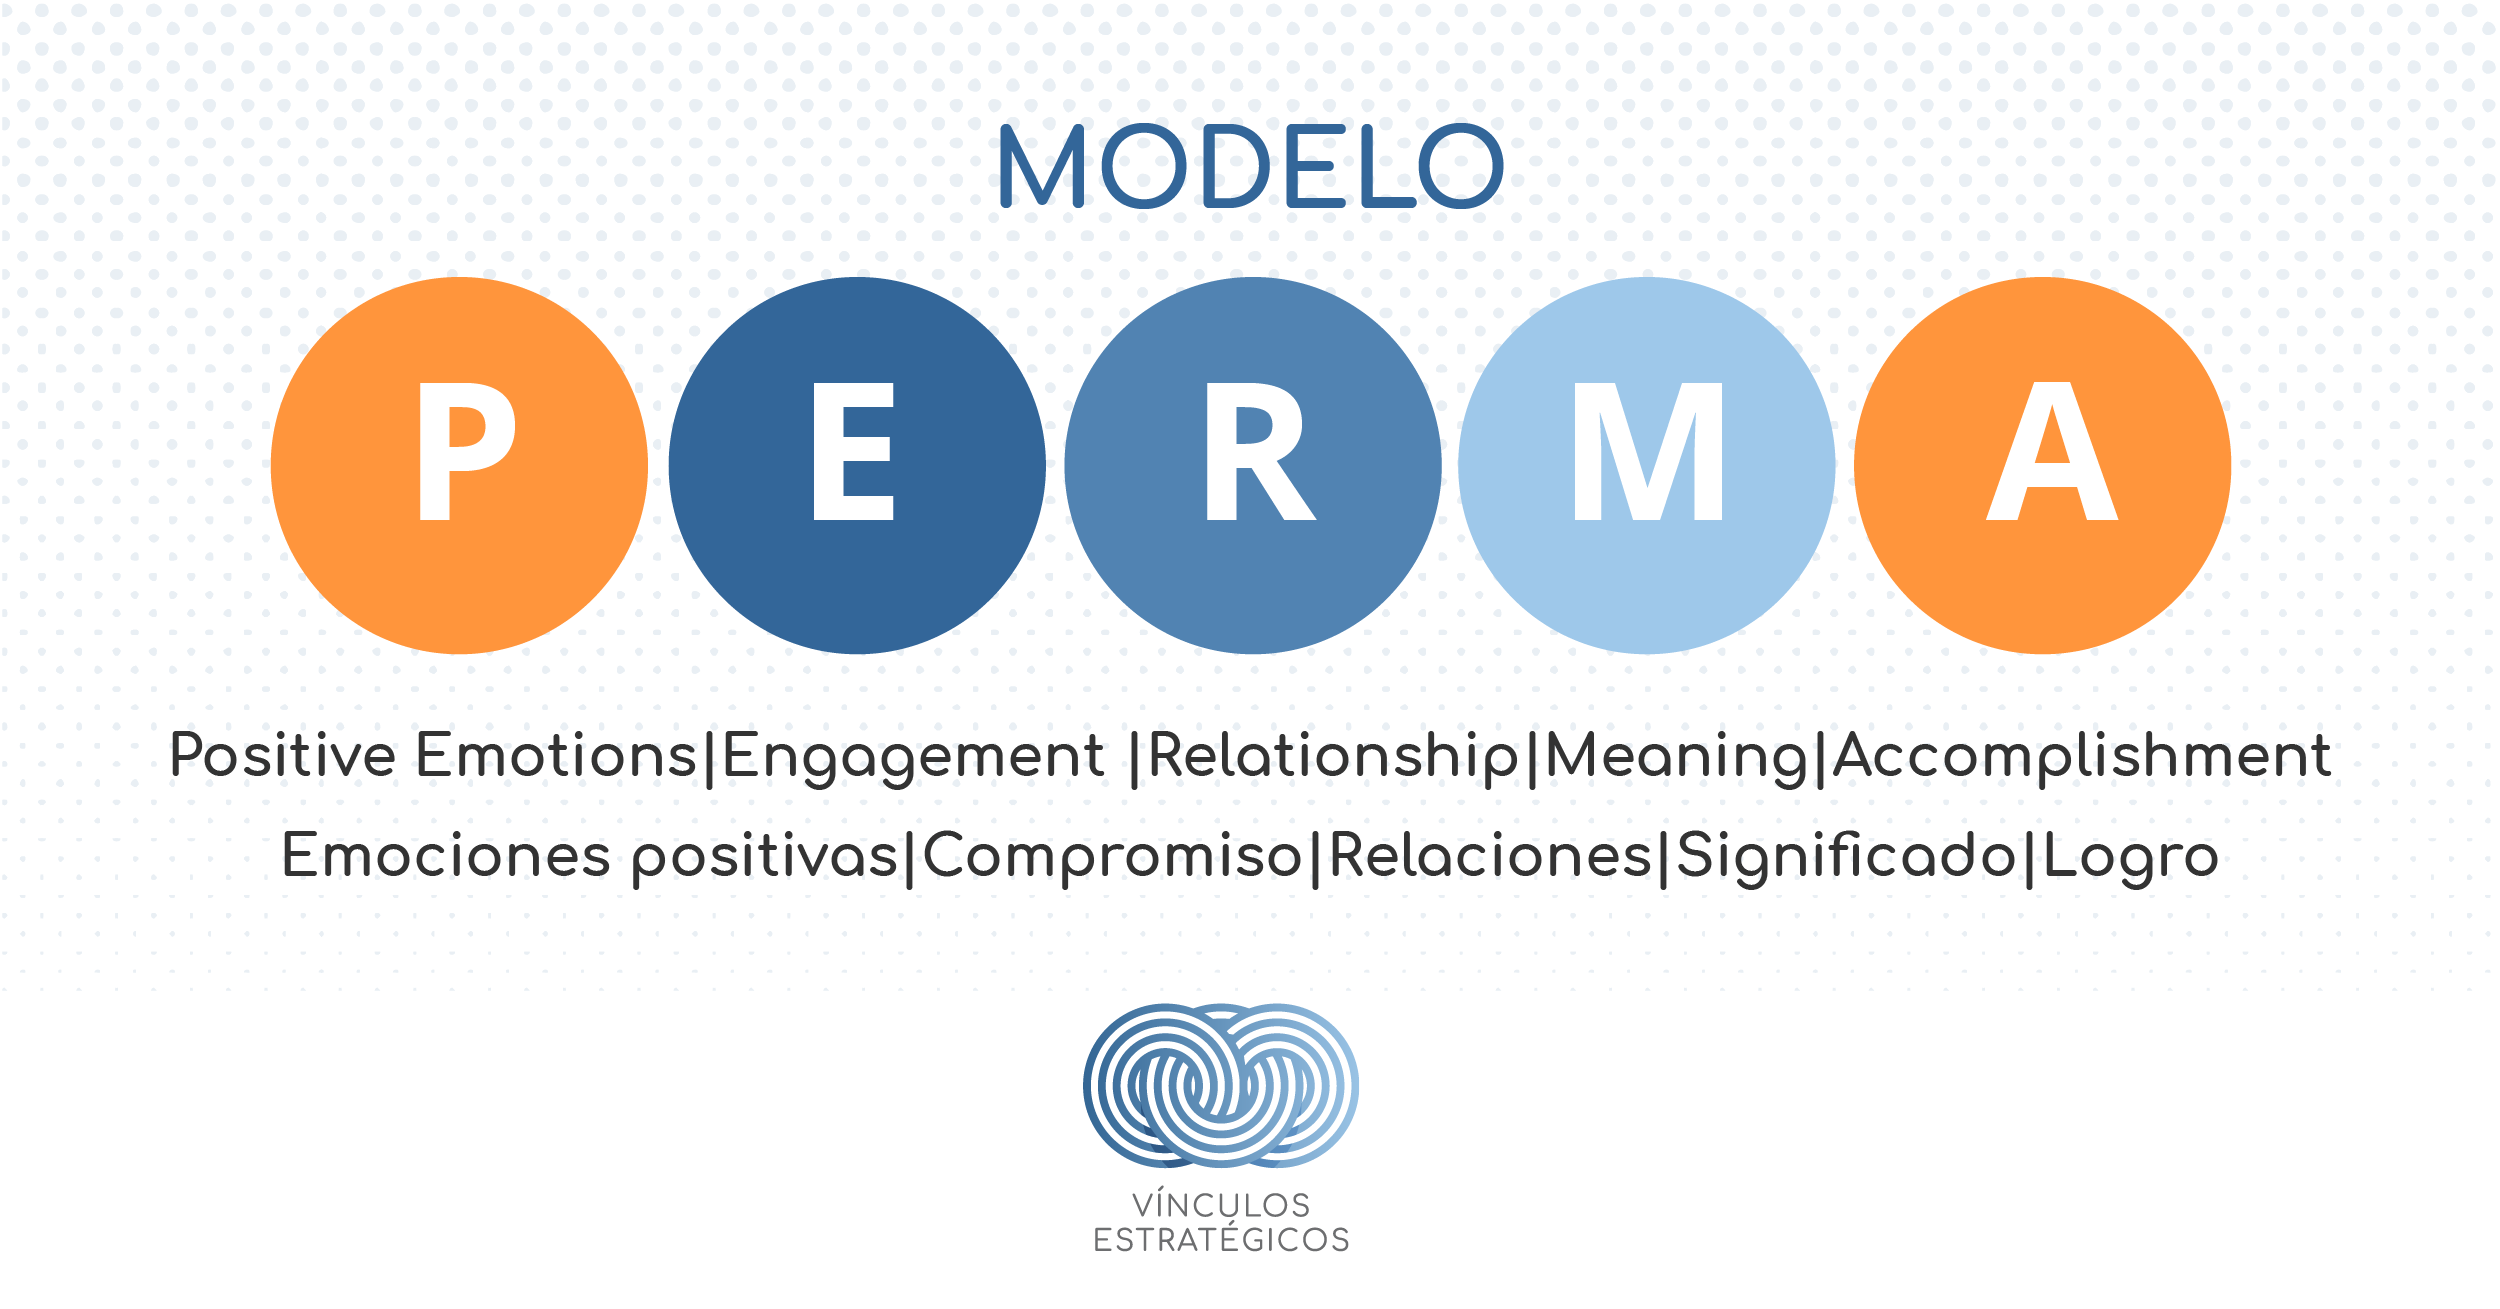 Transformación positiva en el trabajo: Modelo PERMA - Vinculos Estratégicos